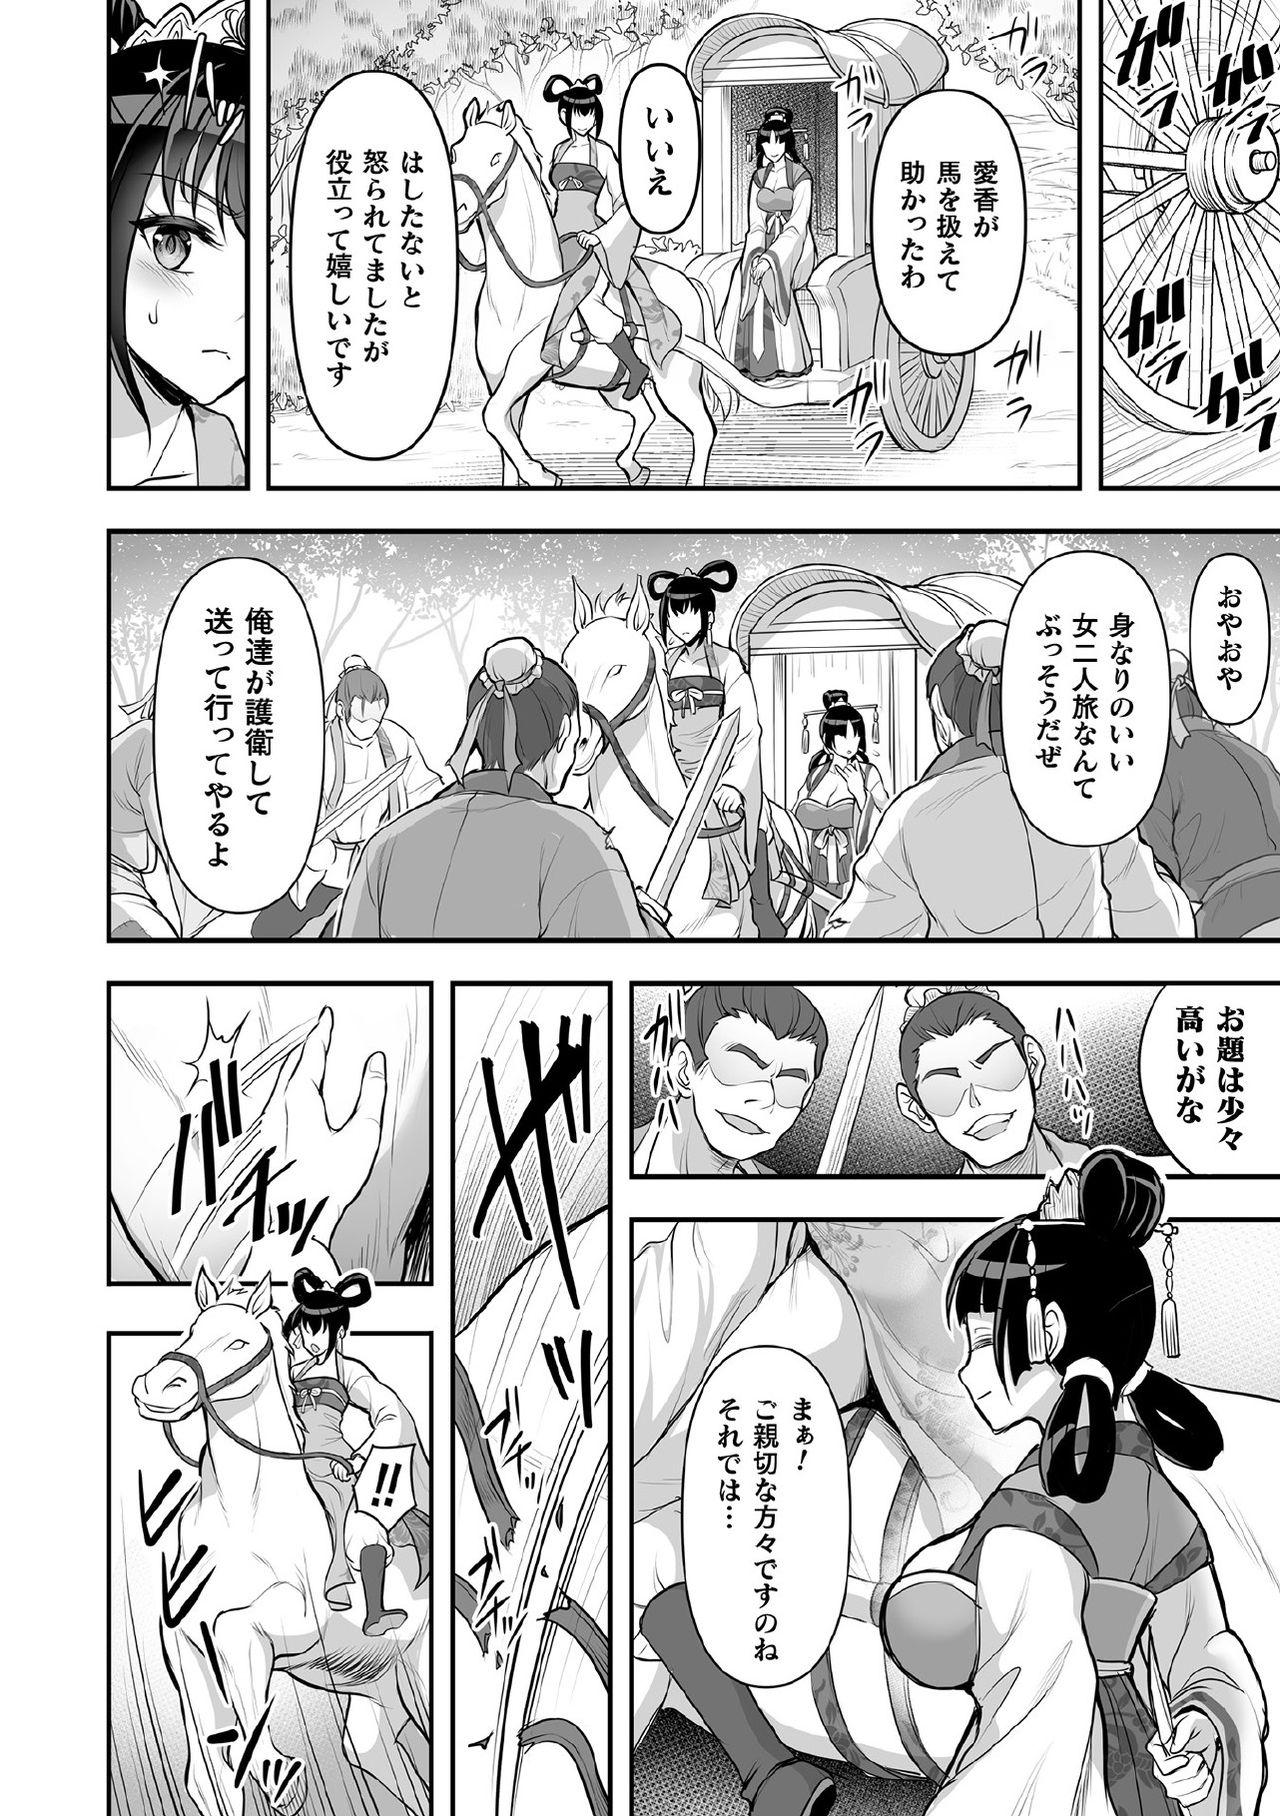 Screaming Kukkoro Heroines Vol. 11 - Kuroinu kedakaki seijo wa hakudaku ni somaru Gilf - Page 4